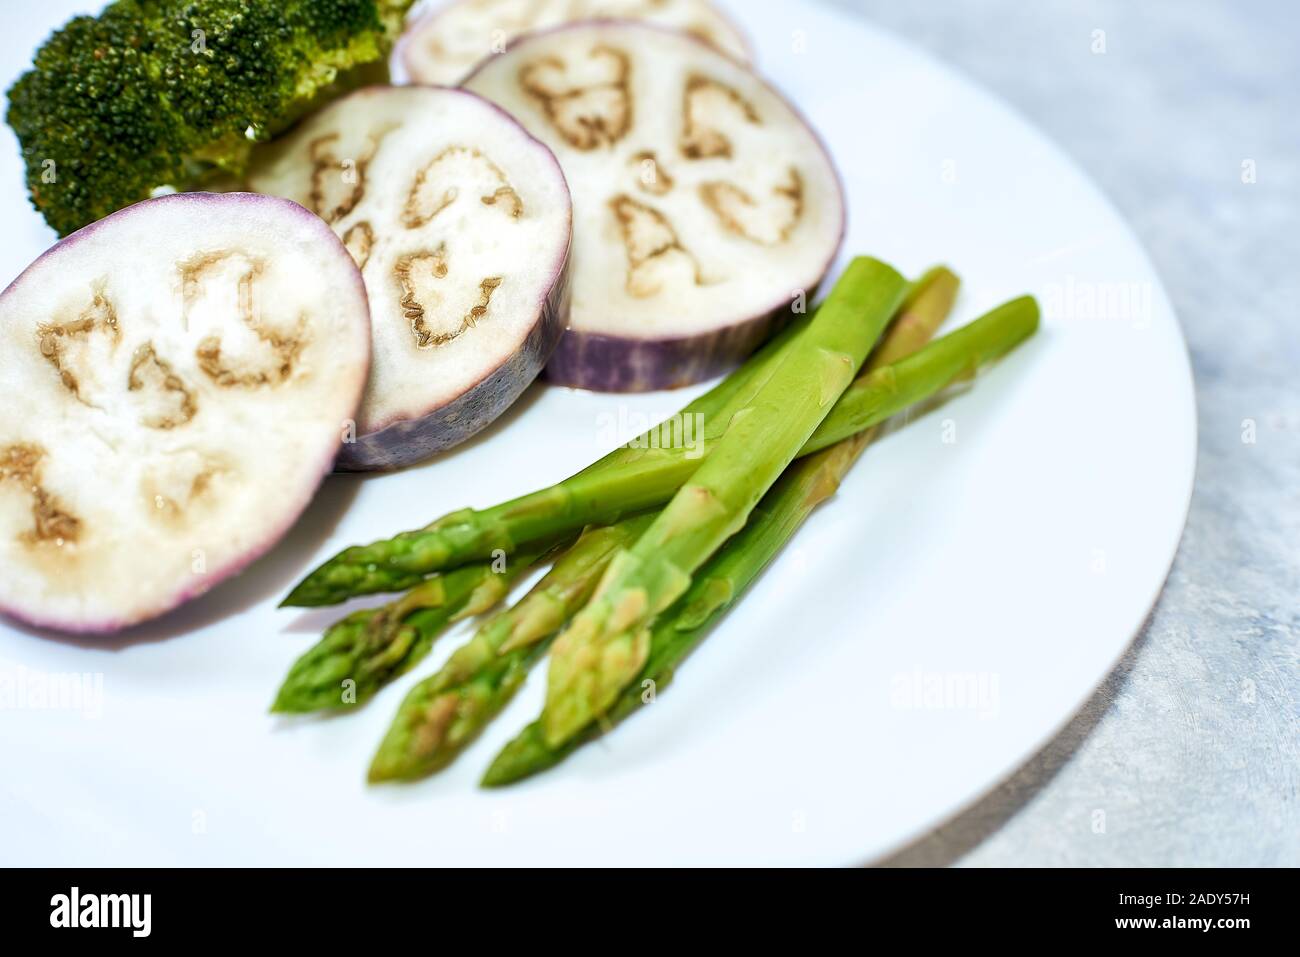 Gedünstetes Gemüse in einer weißen Platte auf einer blauen Tabelle. Auberginen, Brokkoli, Spargel. Stockfoto